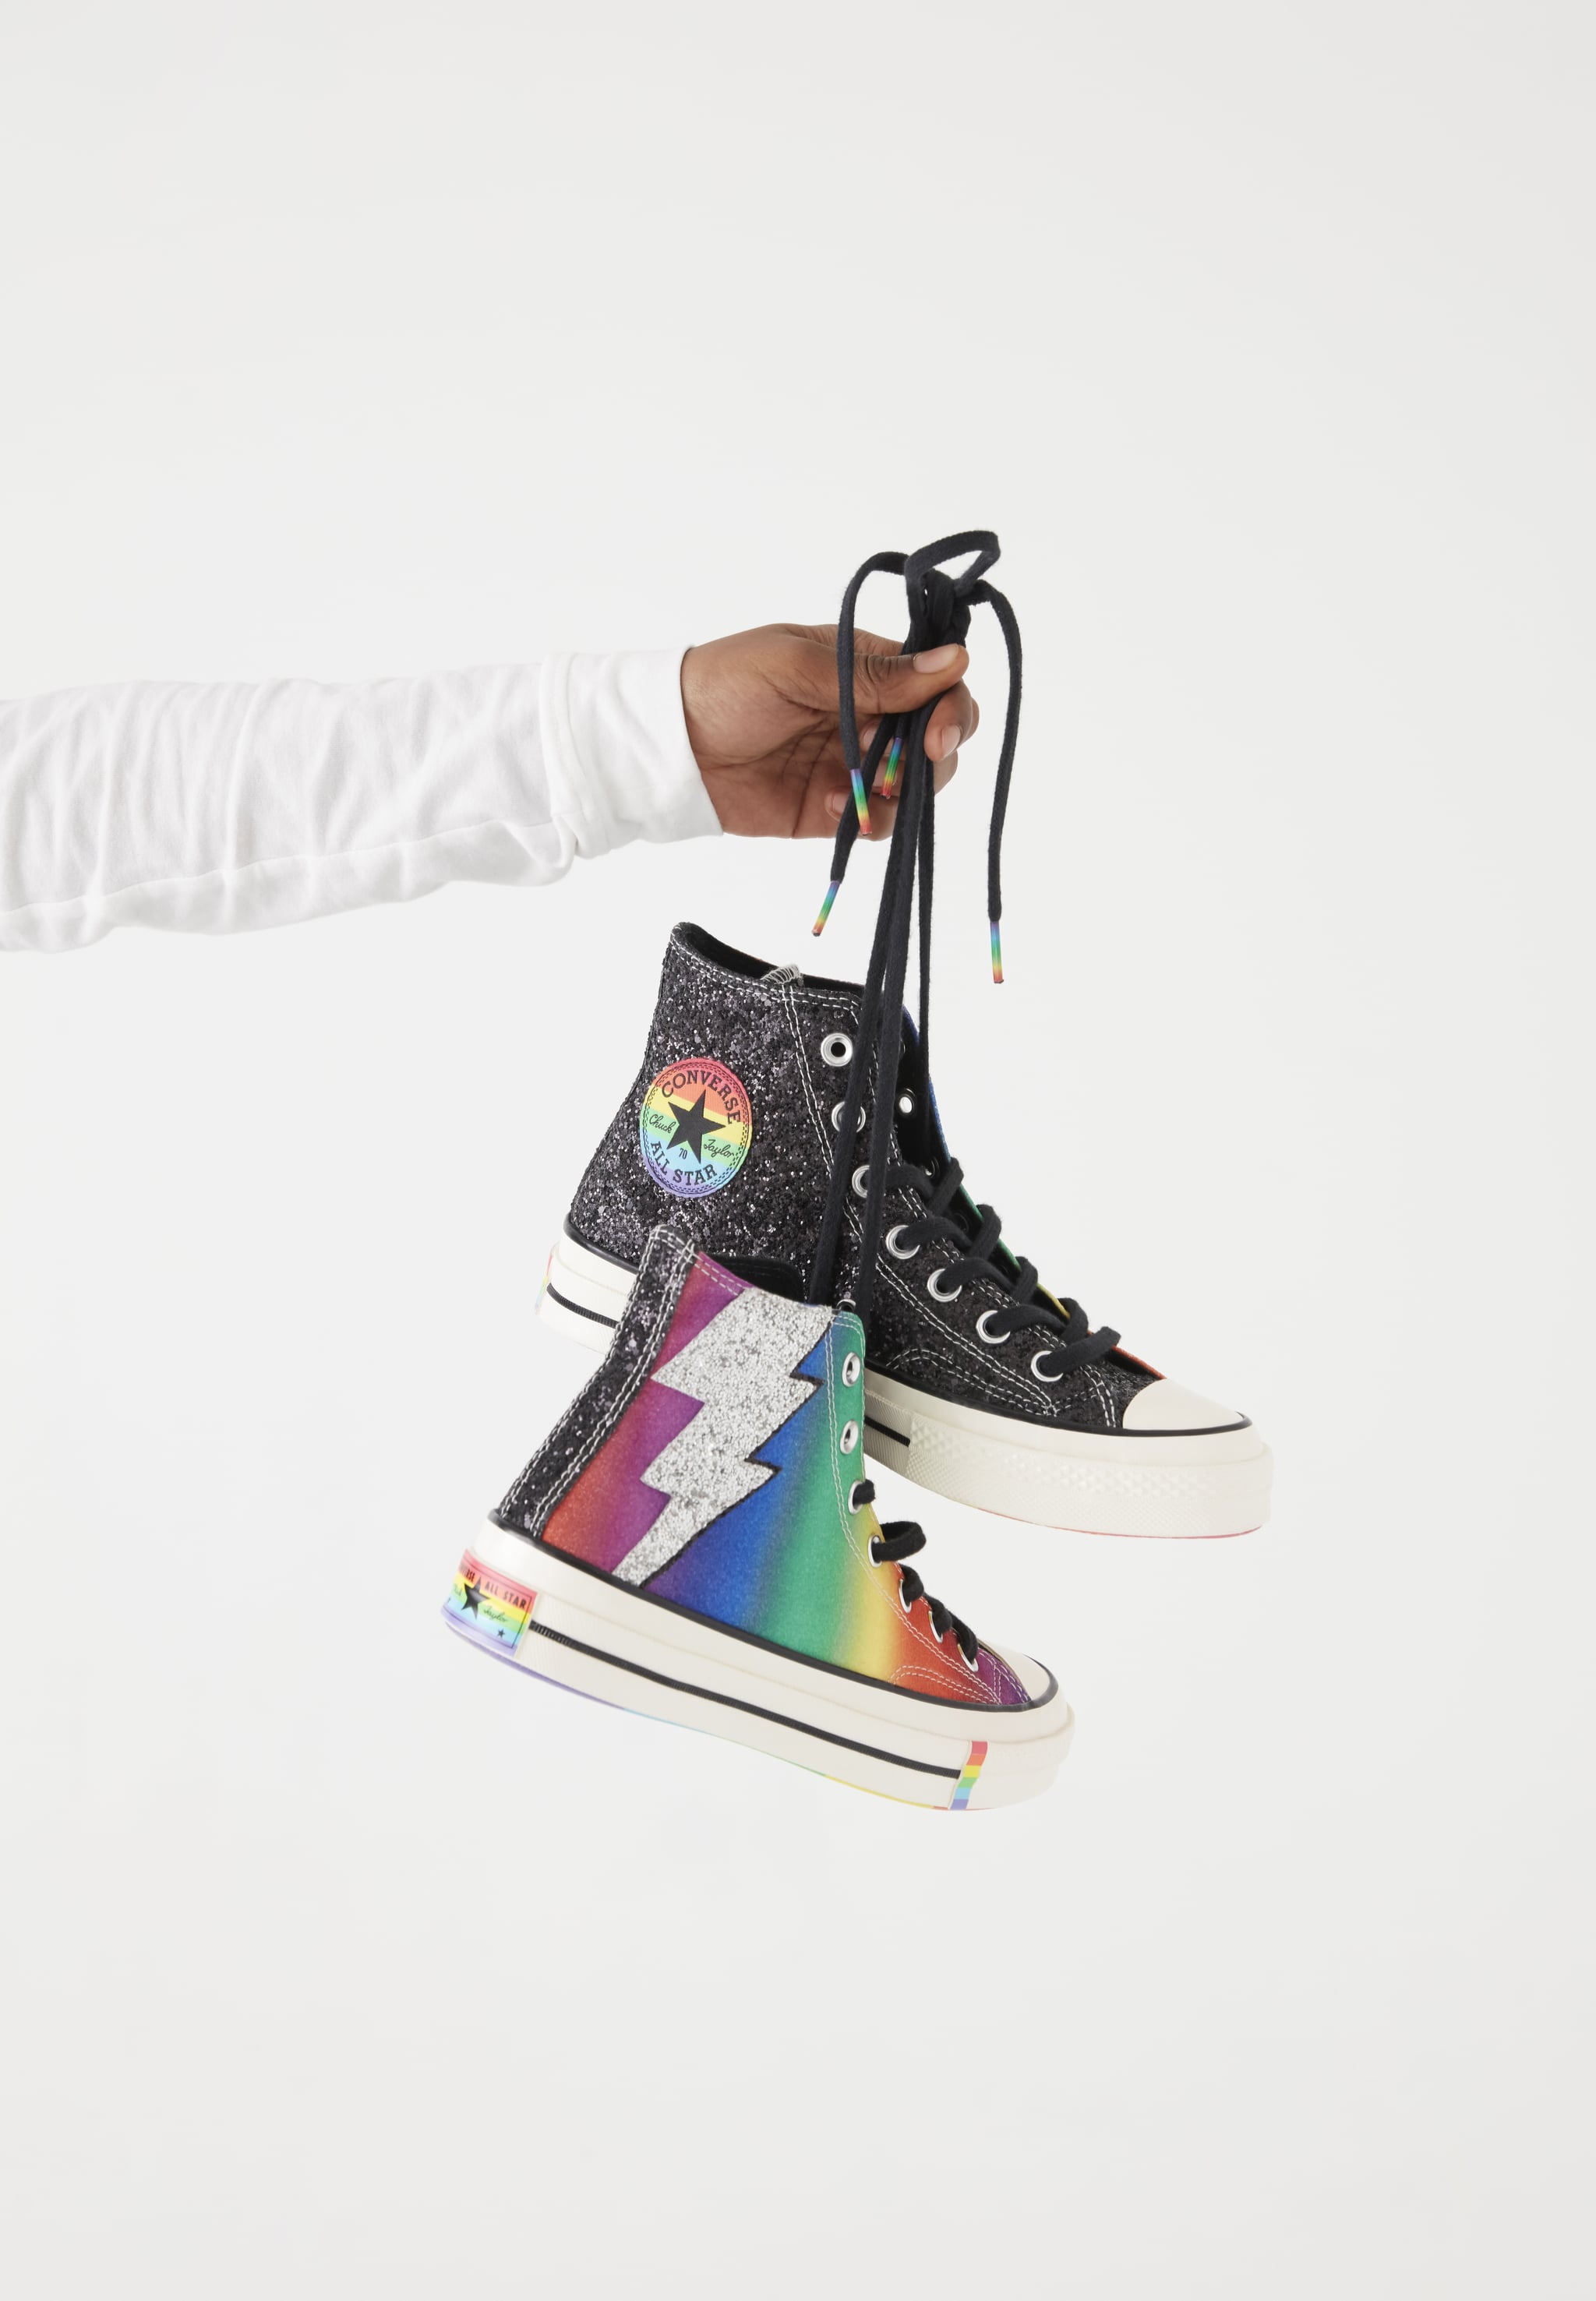 converse pride shoes 2019